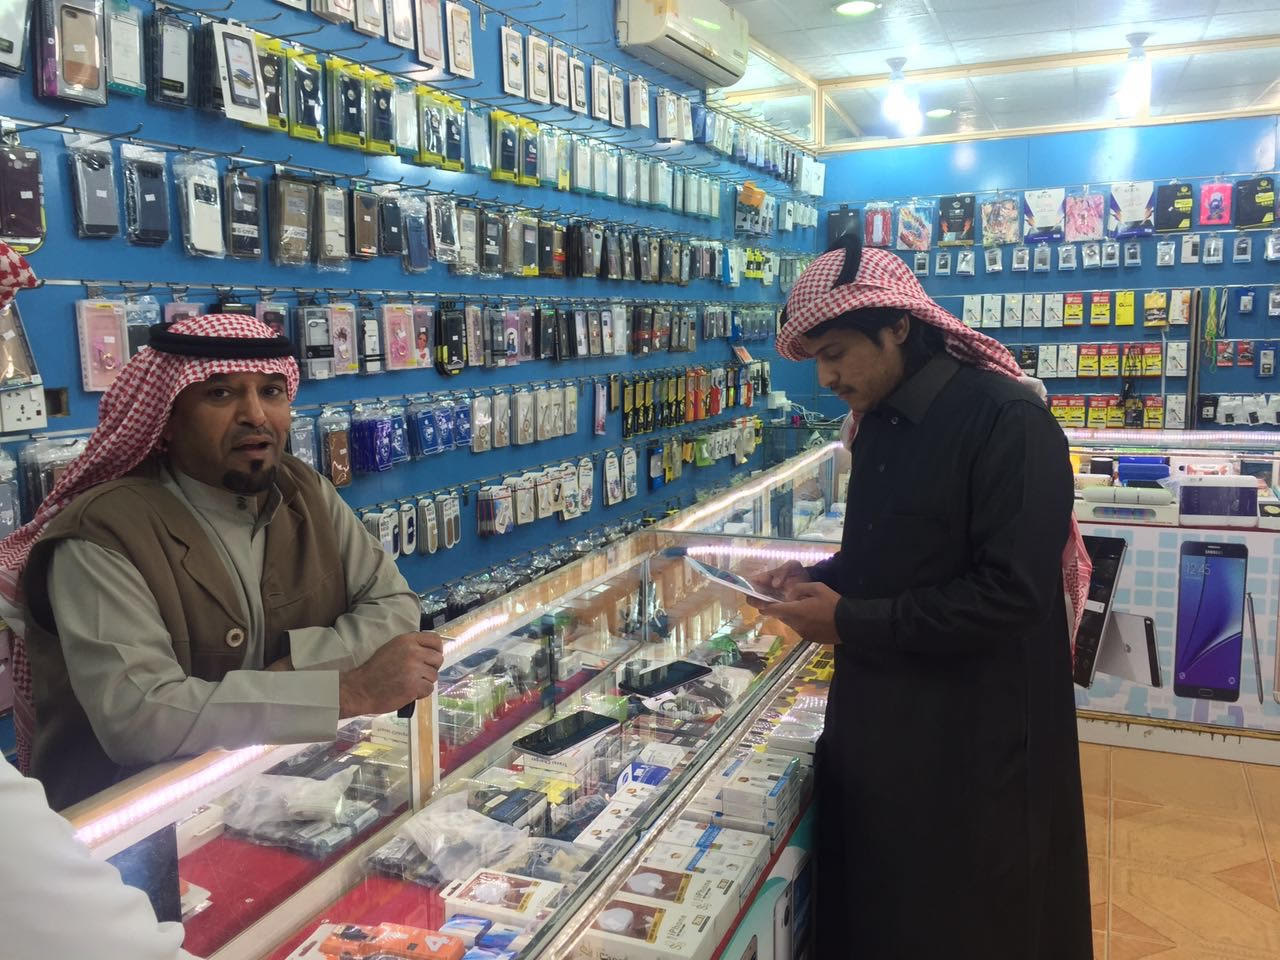 عمل الرياض يوقف خدمات إحدى الشركات ويضبط وافدًا يشغل مهنة سعوديين